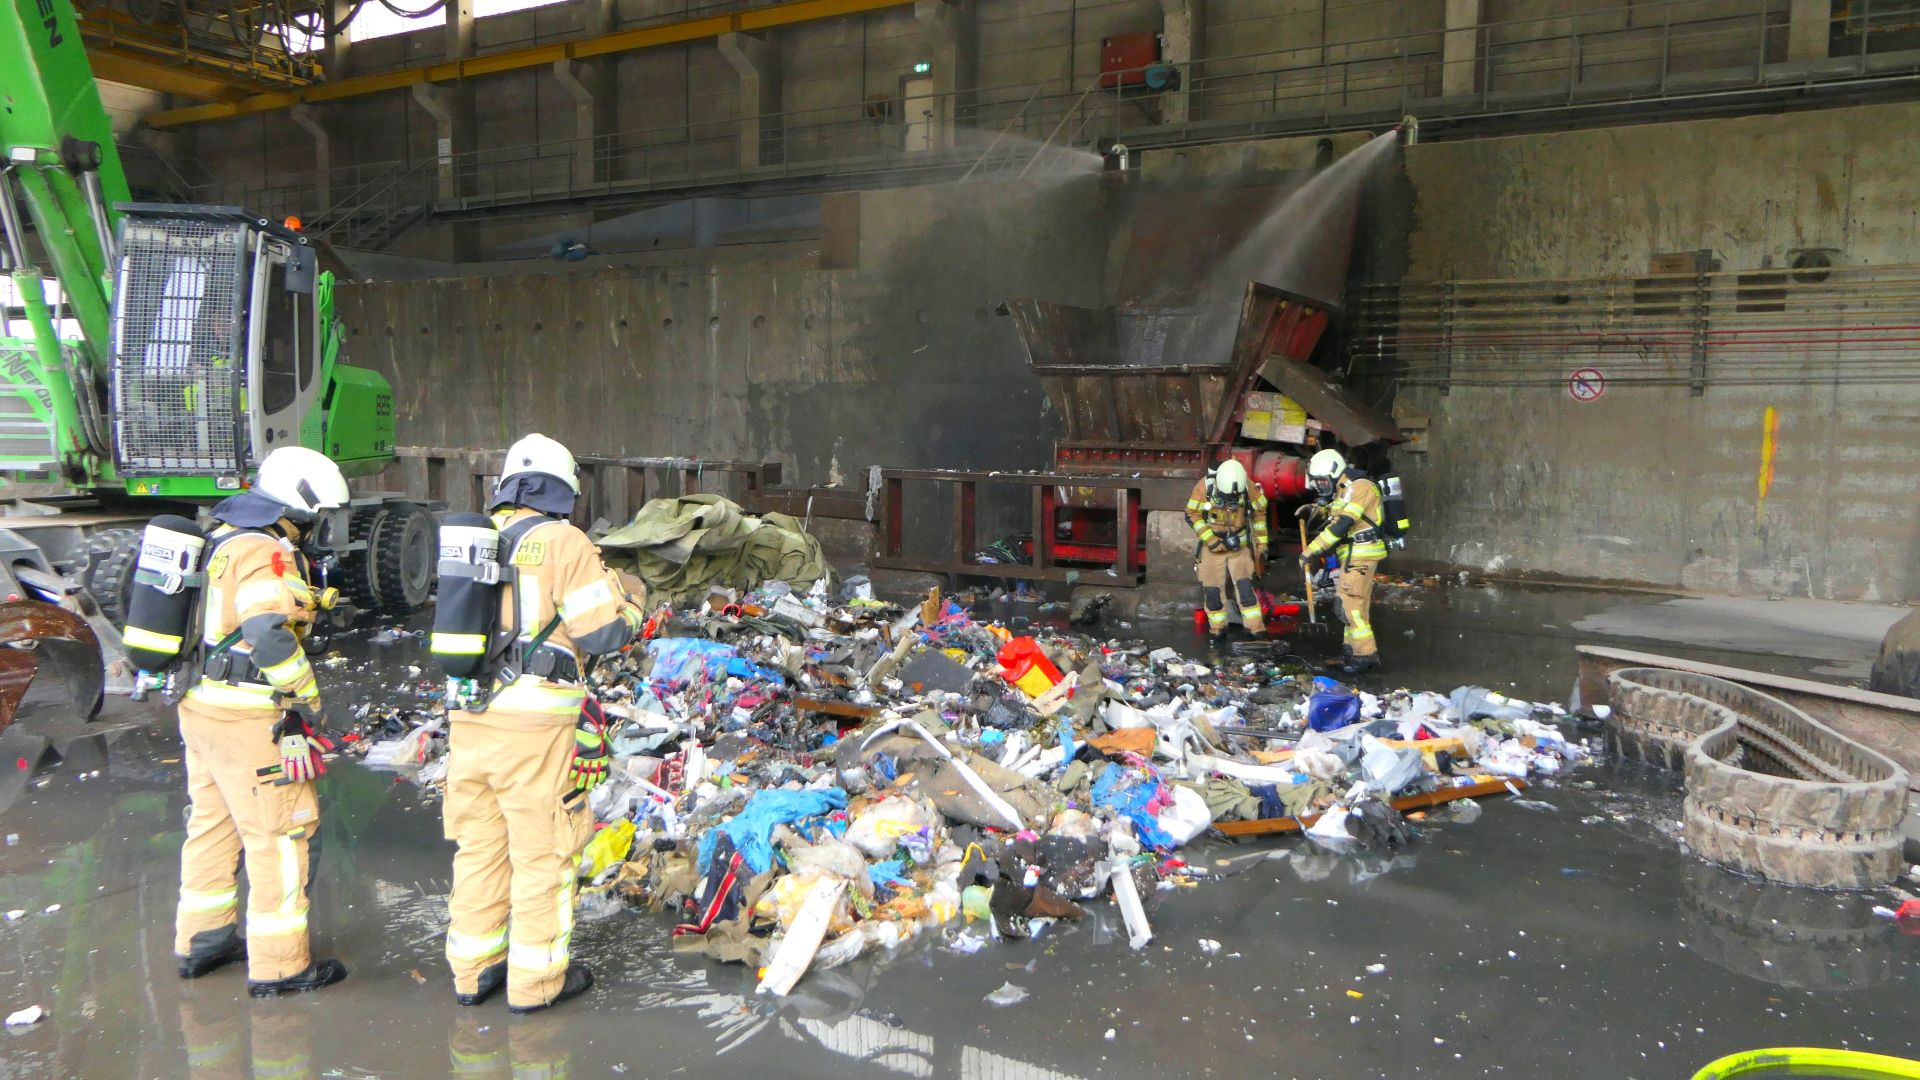 Brand in Müllzerkleinerer einer Recyclingfirma [ Einsatzbericht